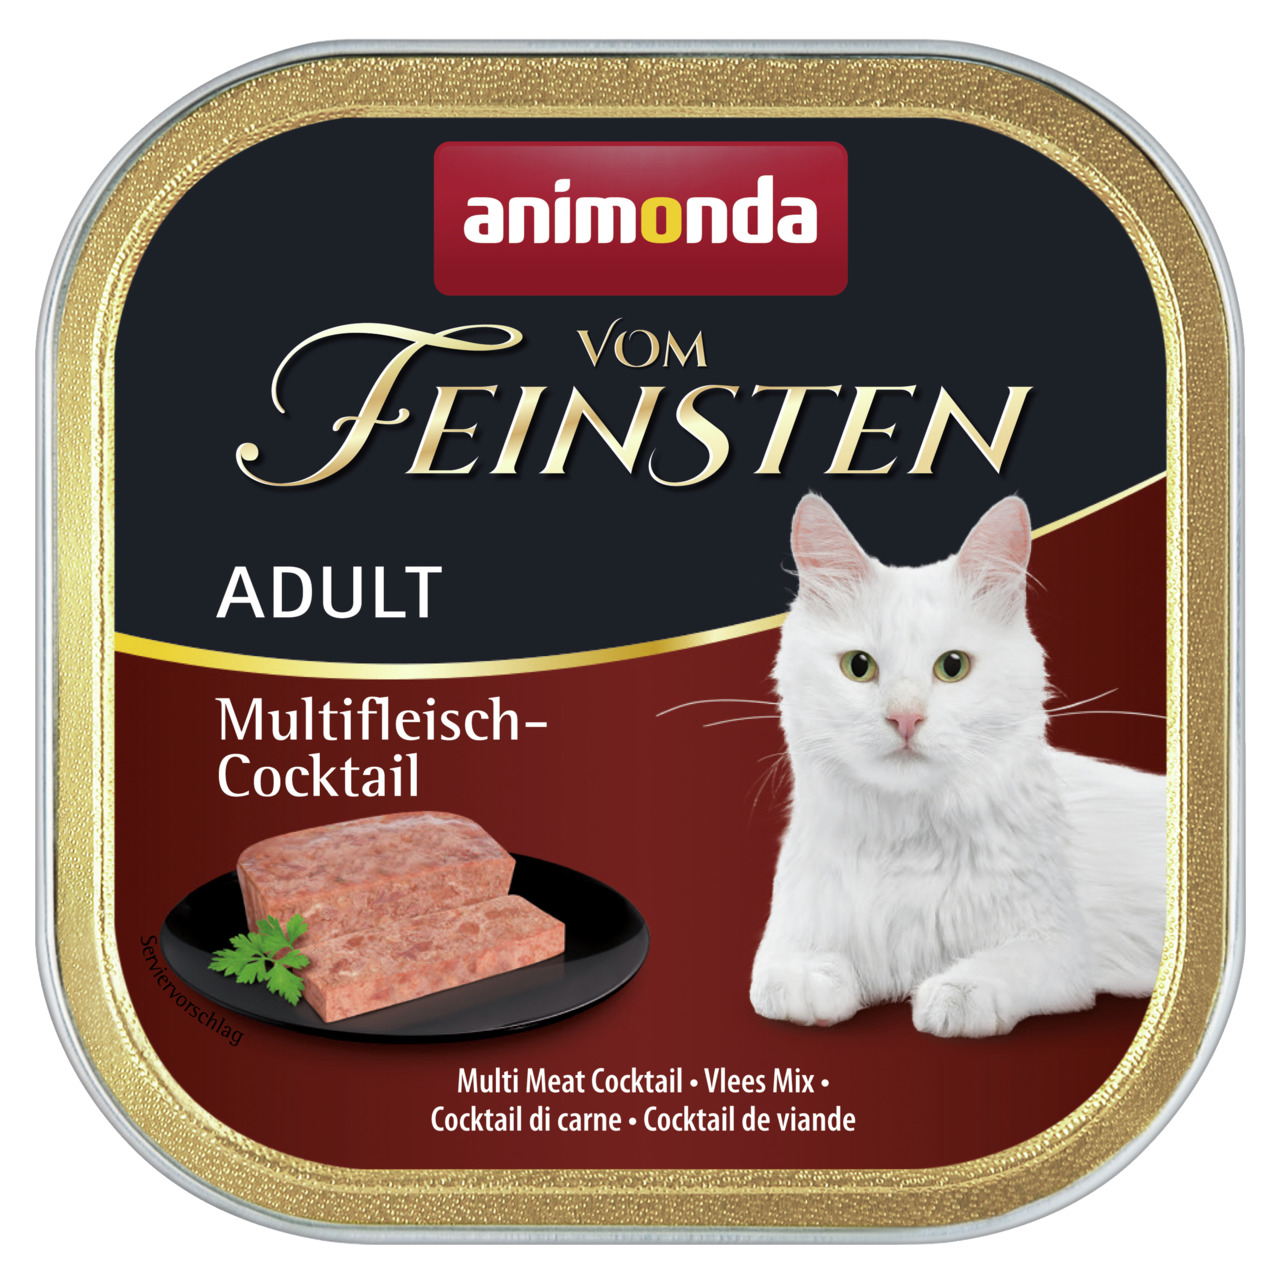 Sparpaket 8 x 100 g Animonda vom Feinsten Adult Multifleisch-Cocktail Katzen Nassfutter